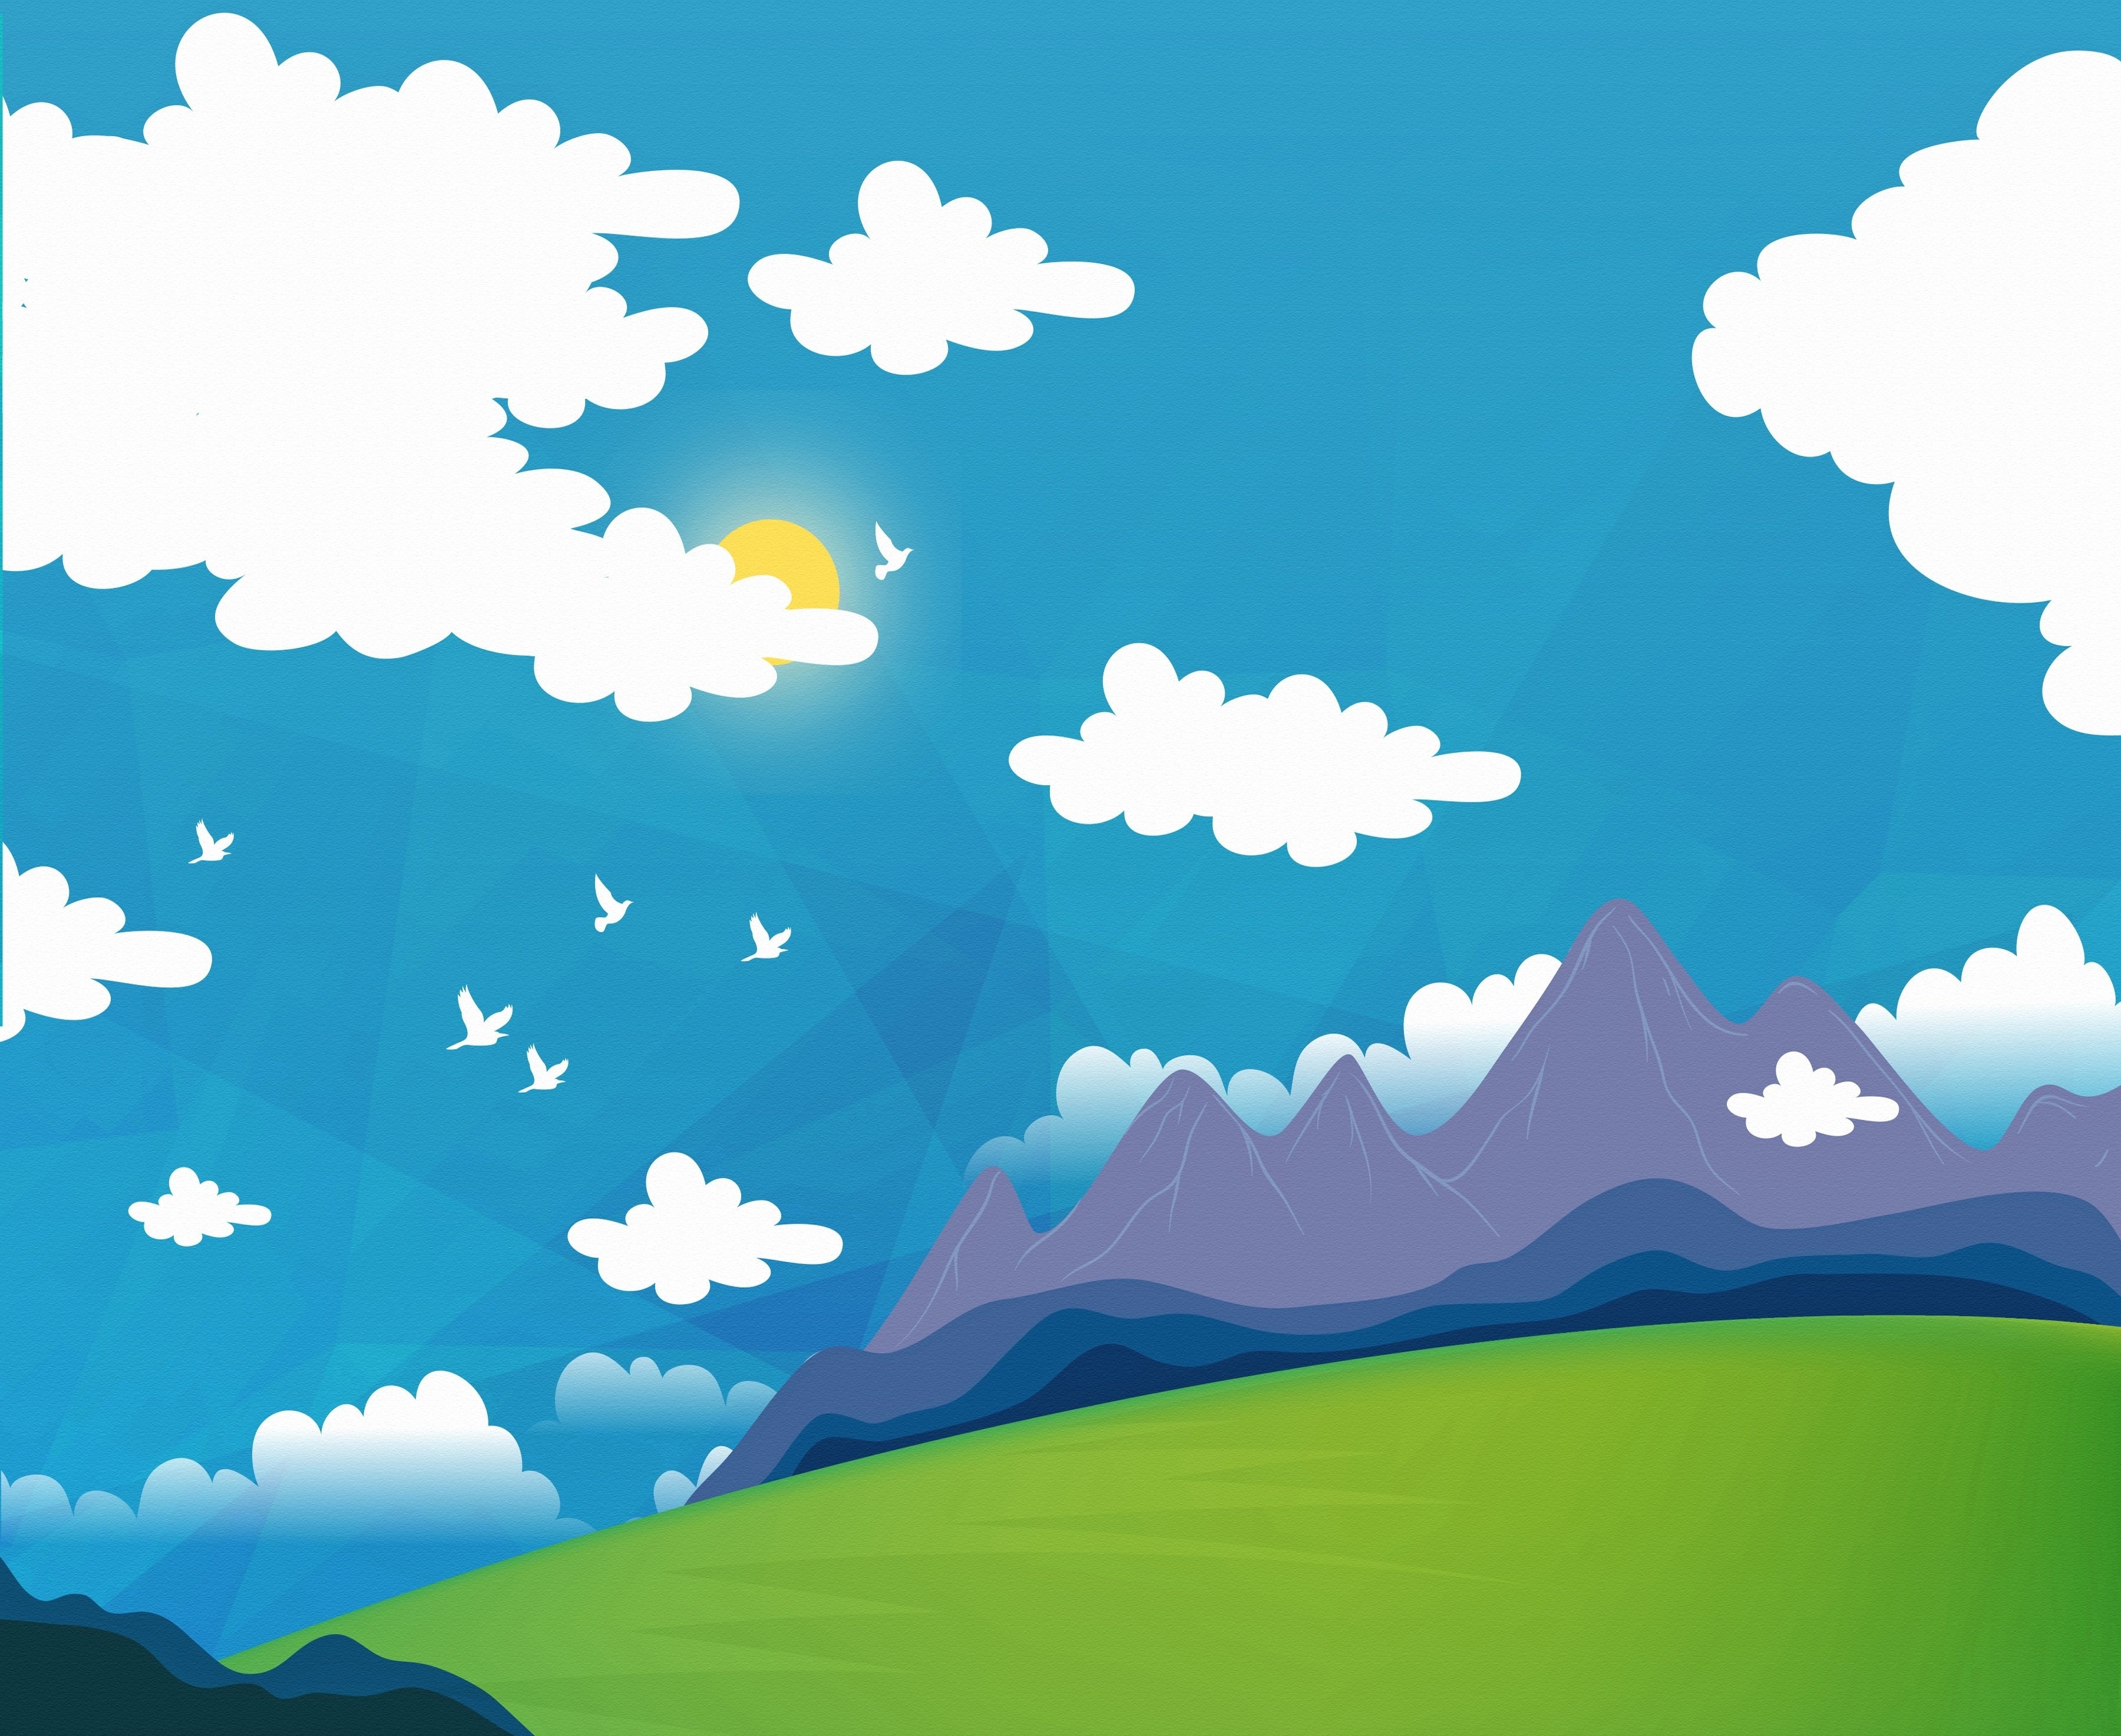 Скачать обои бесплатно Птицы, Солнце, Облака, Гора, Художественные картинка на рабочий стол ПК